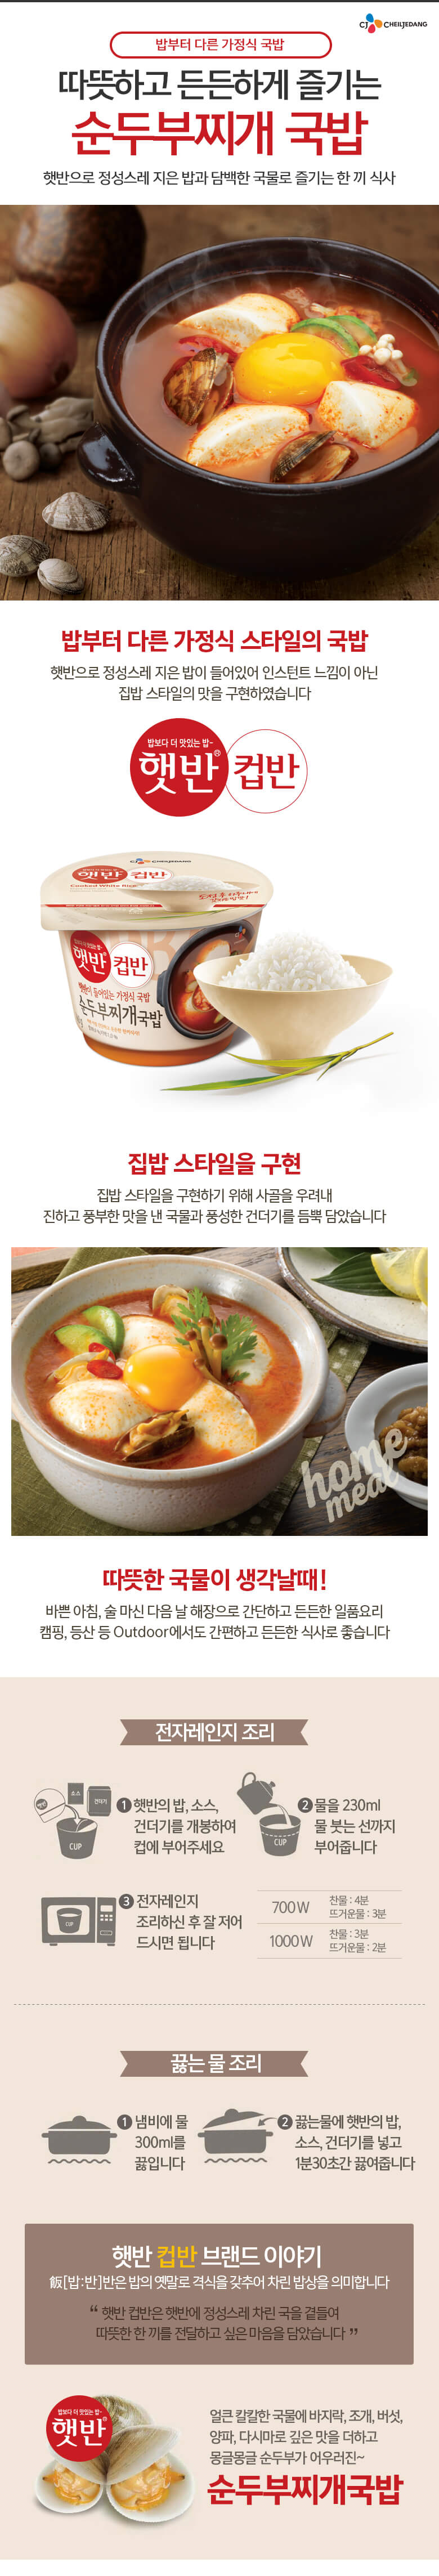 韓國食品-[CJ] 컵반[순두부찌개] 173g